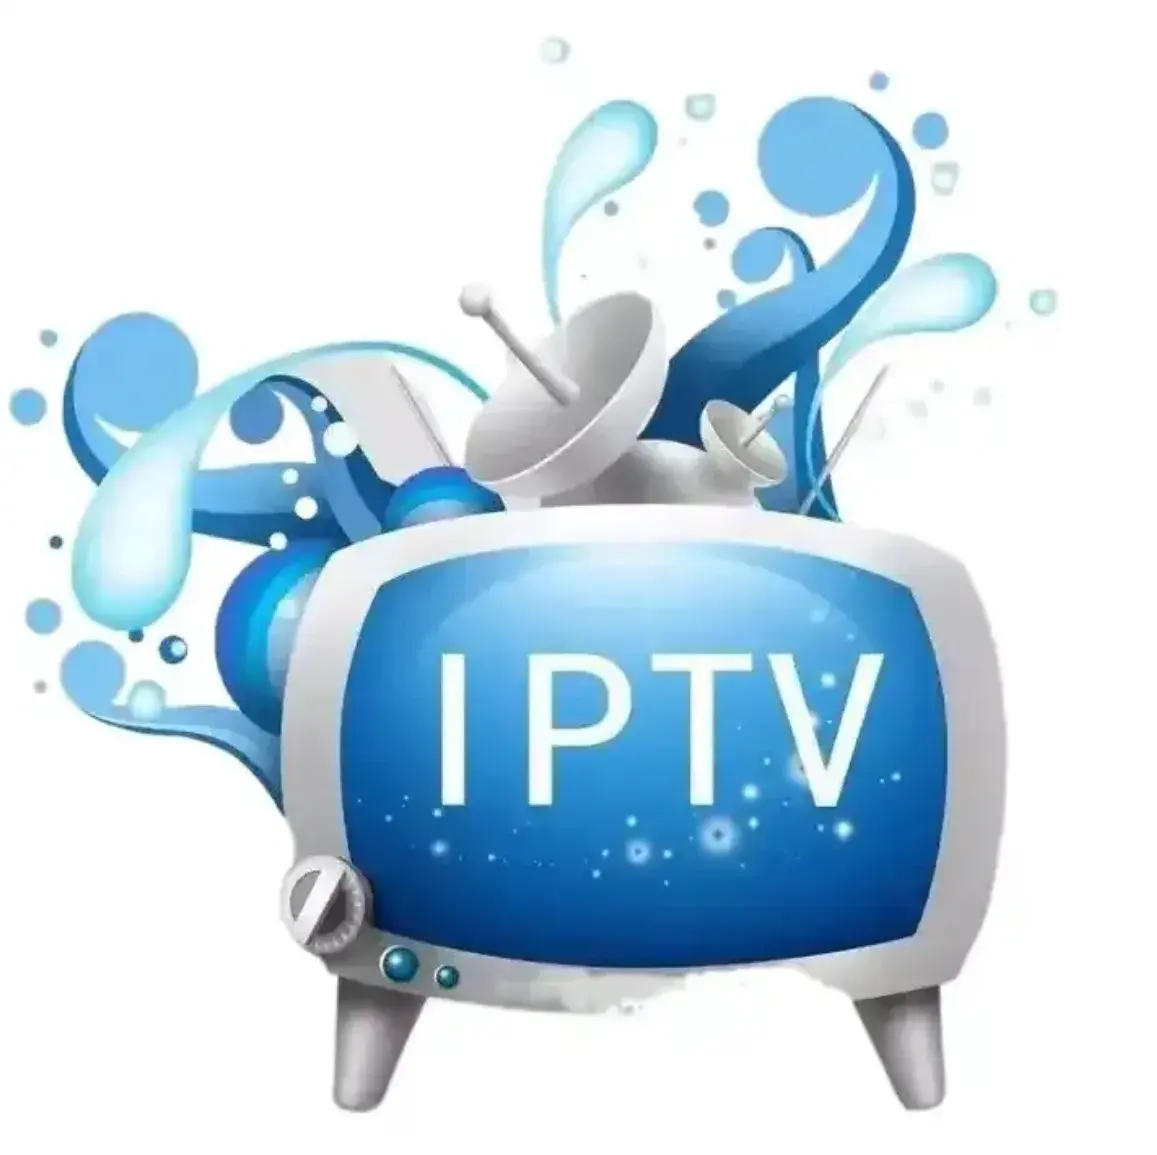 Caixa de assinatura estável para iptv, abono de 12 meses, painel de revendedor, abono para iptv deutschland, teste de assinatura m3u gratuito para tv